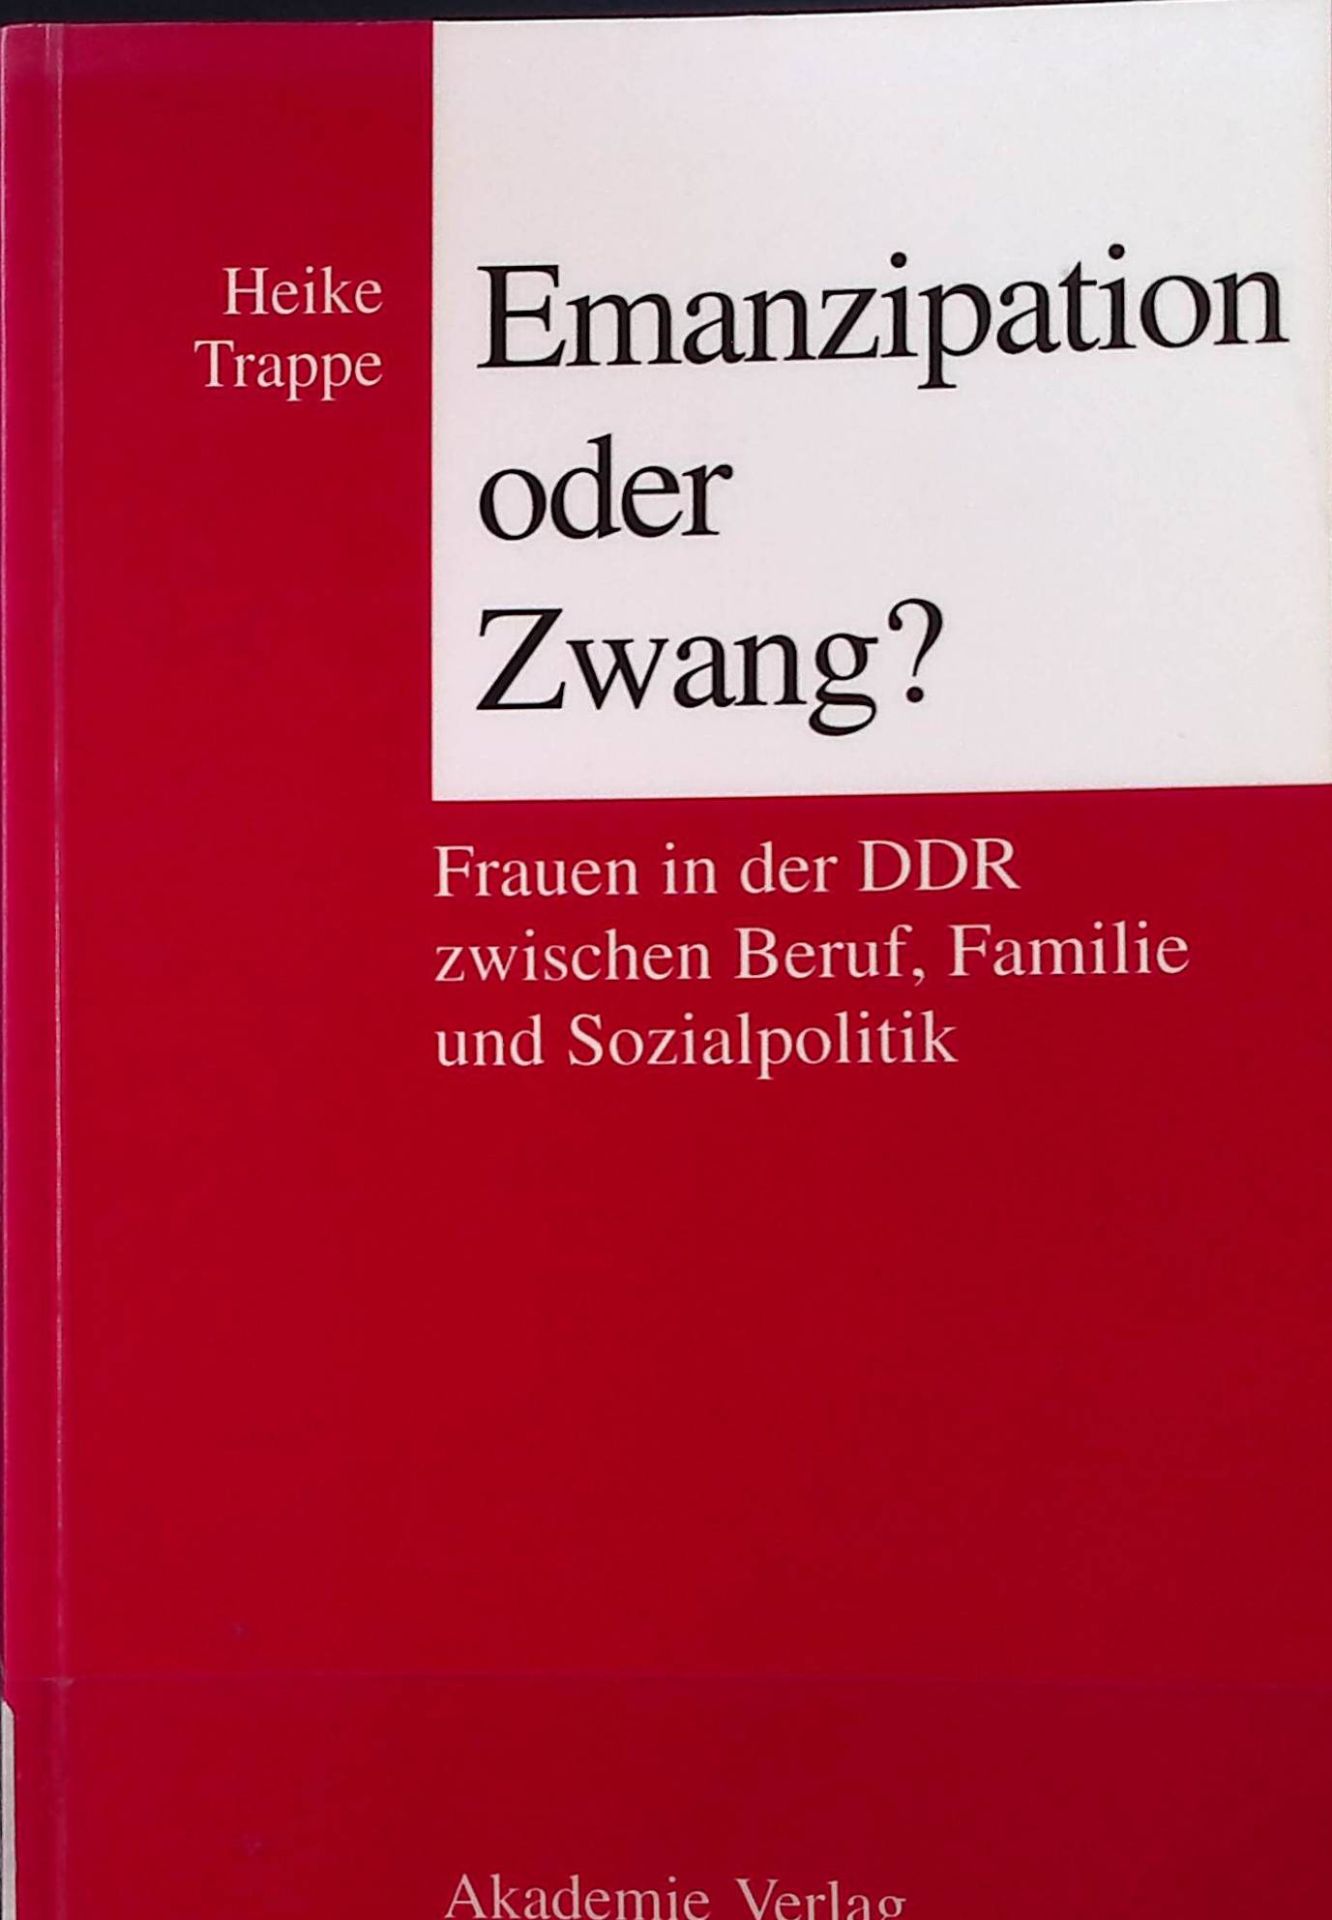 Emanzipation oder Zwang? : Frauen in der DDR zwischen Beruf, Familie und Sozialpolitik. - Trappe, Heike